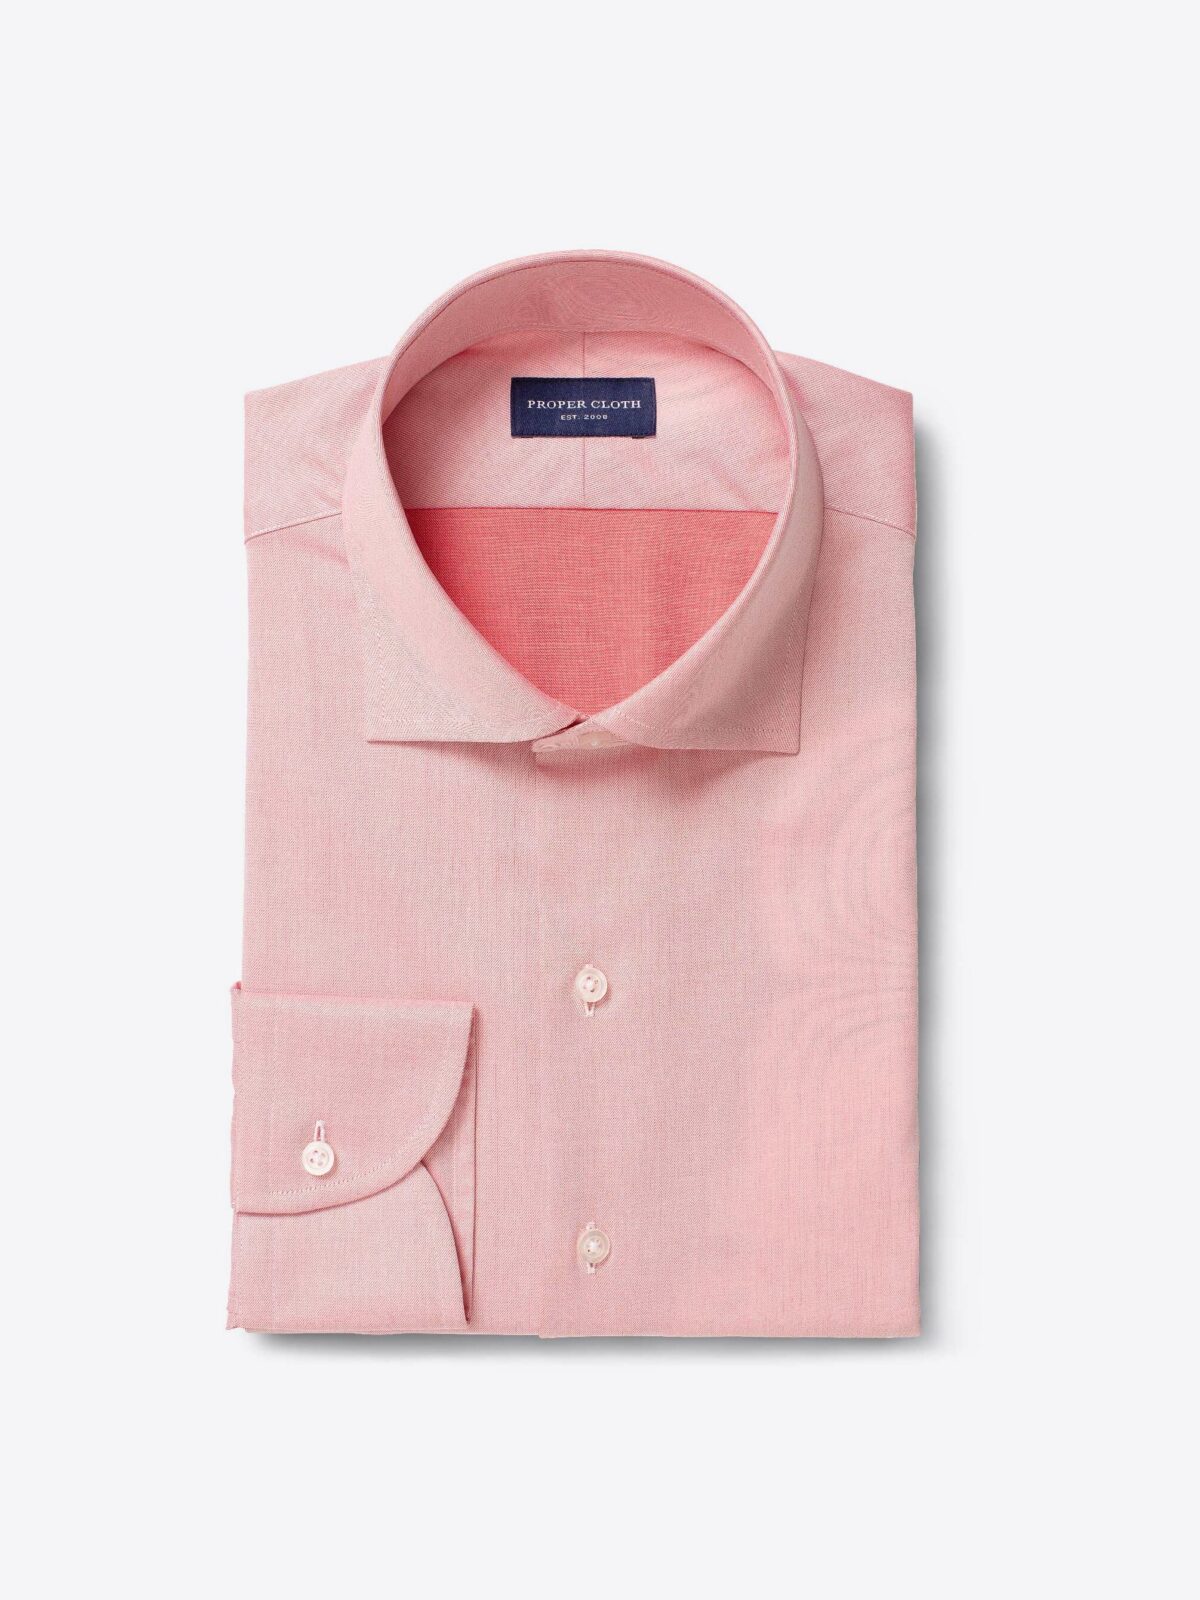 Thomas Pink Shirts for Men